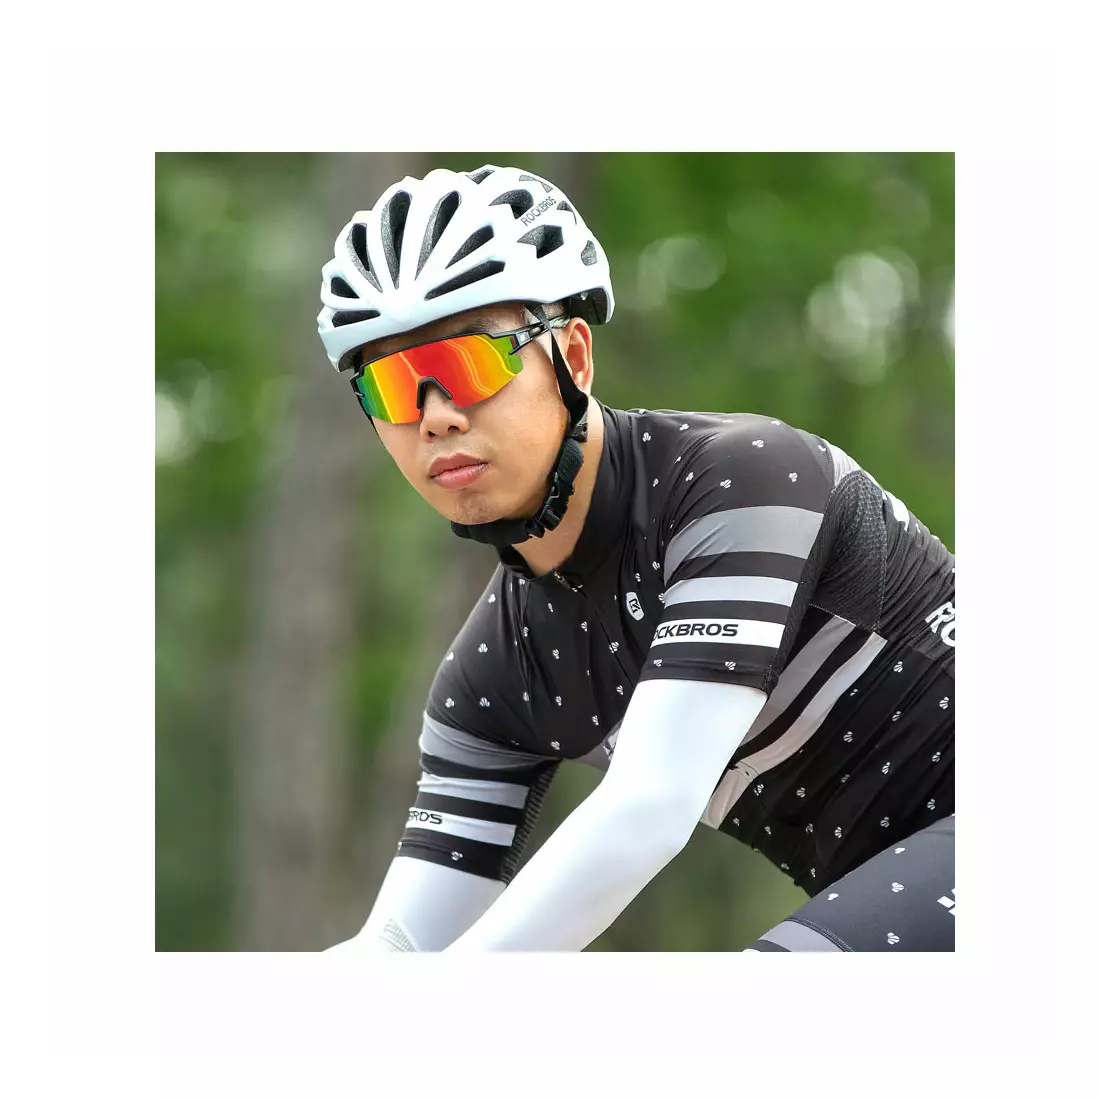 Rockbros 10171 Fahrrad / Sportbrille mit polarisiertem schwarz-grau